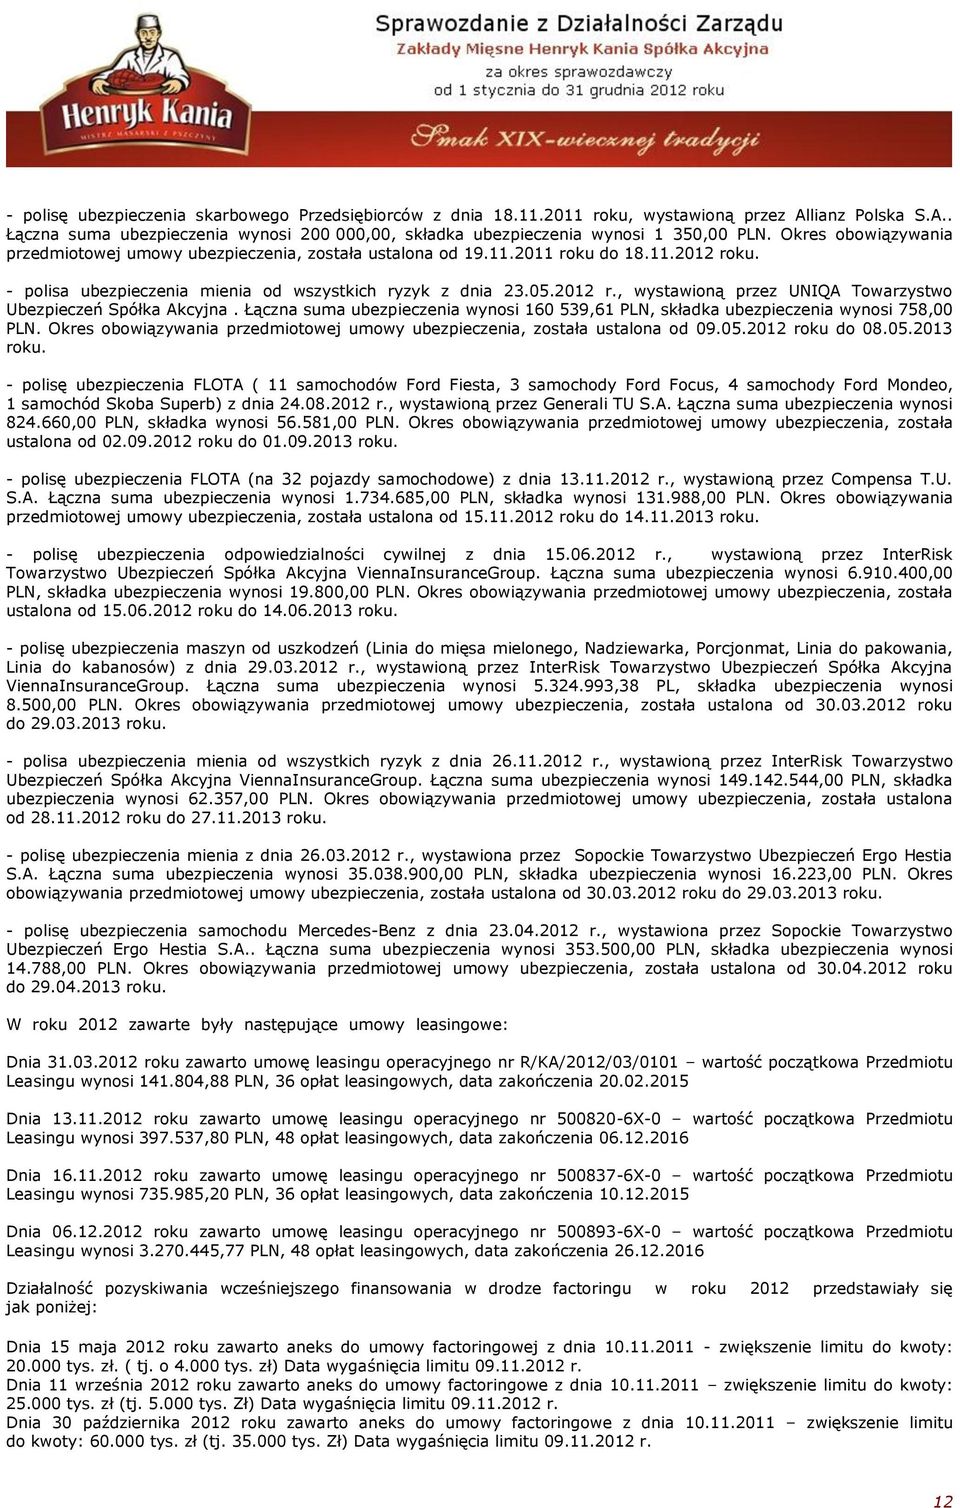 Łączna suma ubezpieczenia wynosi 160 539,61 PLN, składka ubezpieczenia wynosi 758,00 PLN. Okres obowiązywania przedmiotowej umowy ubezpieczenia, została ustalona od 09.05.2012 roku do 08.05.2013 roku.